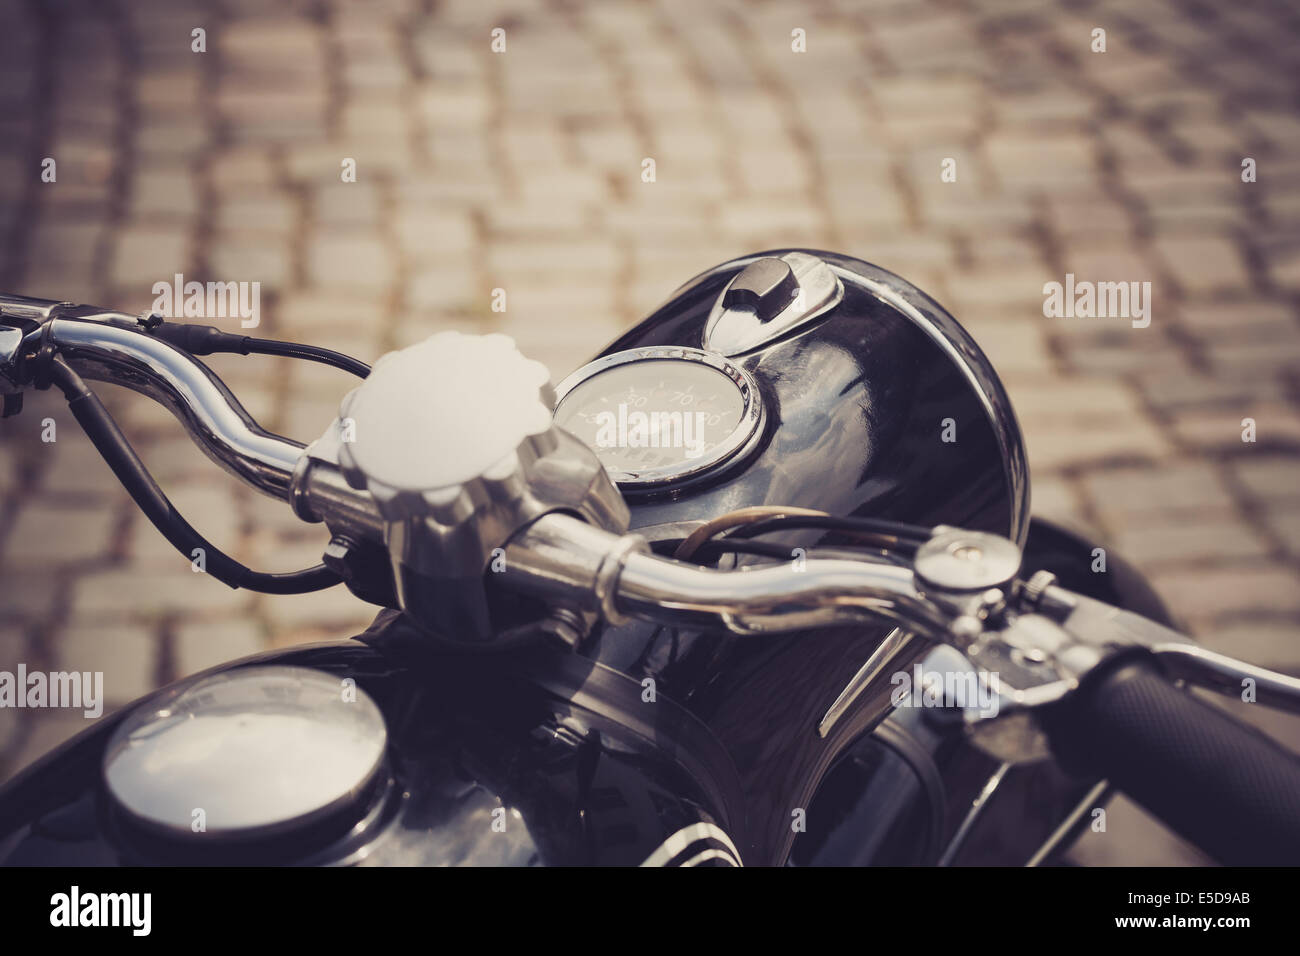 Un motociclo vintage con una strada acciottolata in background Foto Stock